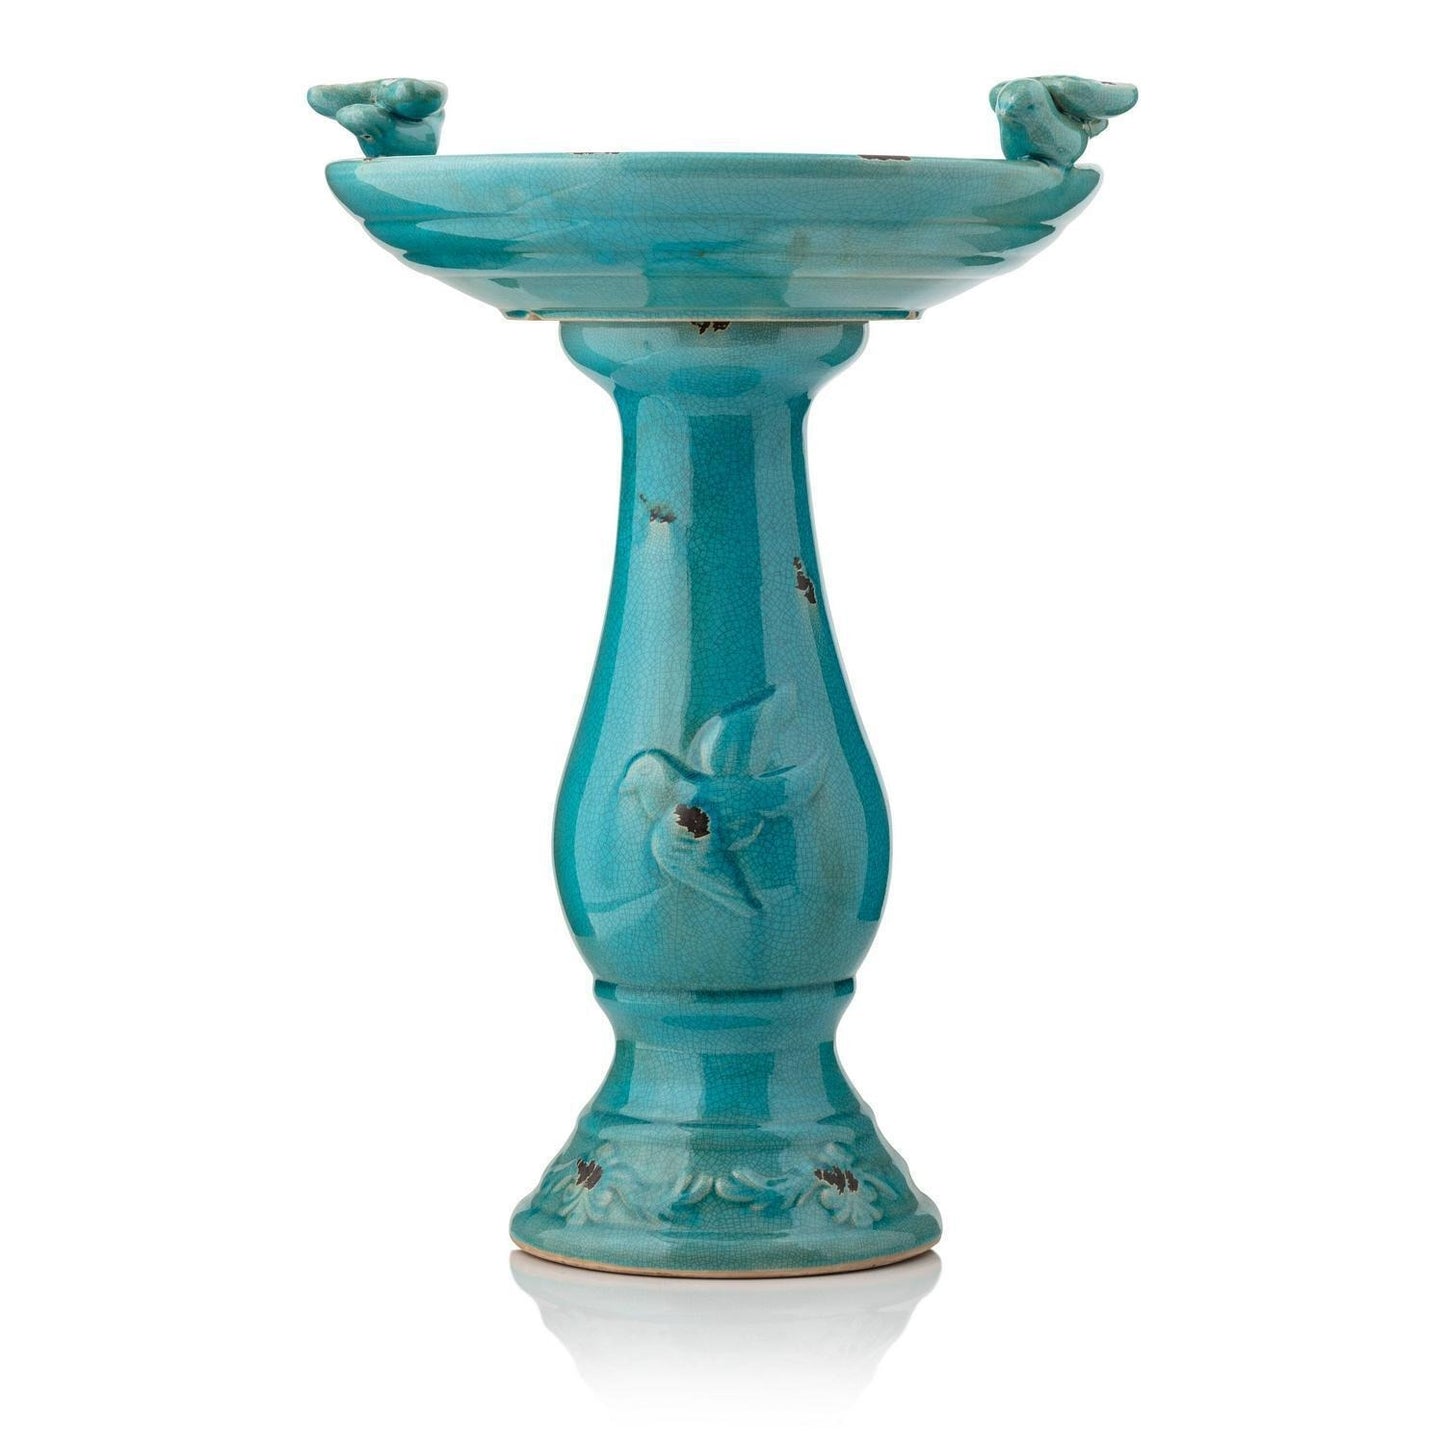 Vintage Turquoise Ceramic Pedestal Birdbath Vintage Yard Art Garden Decor 25in